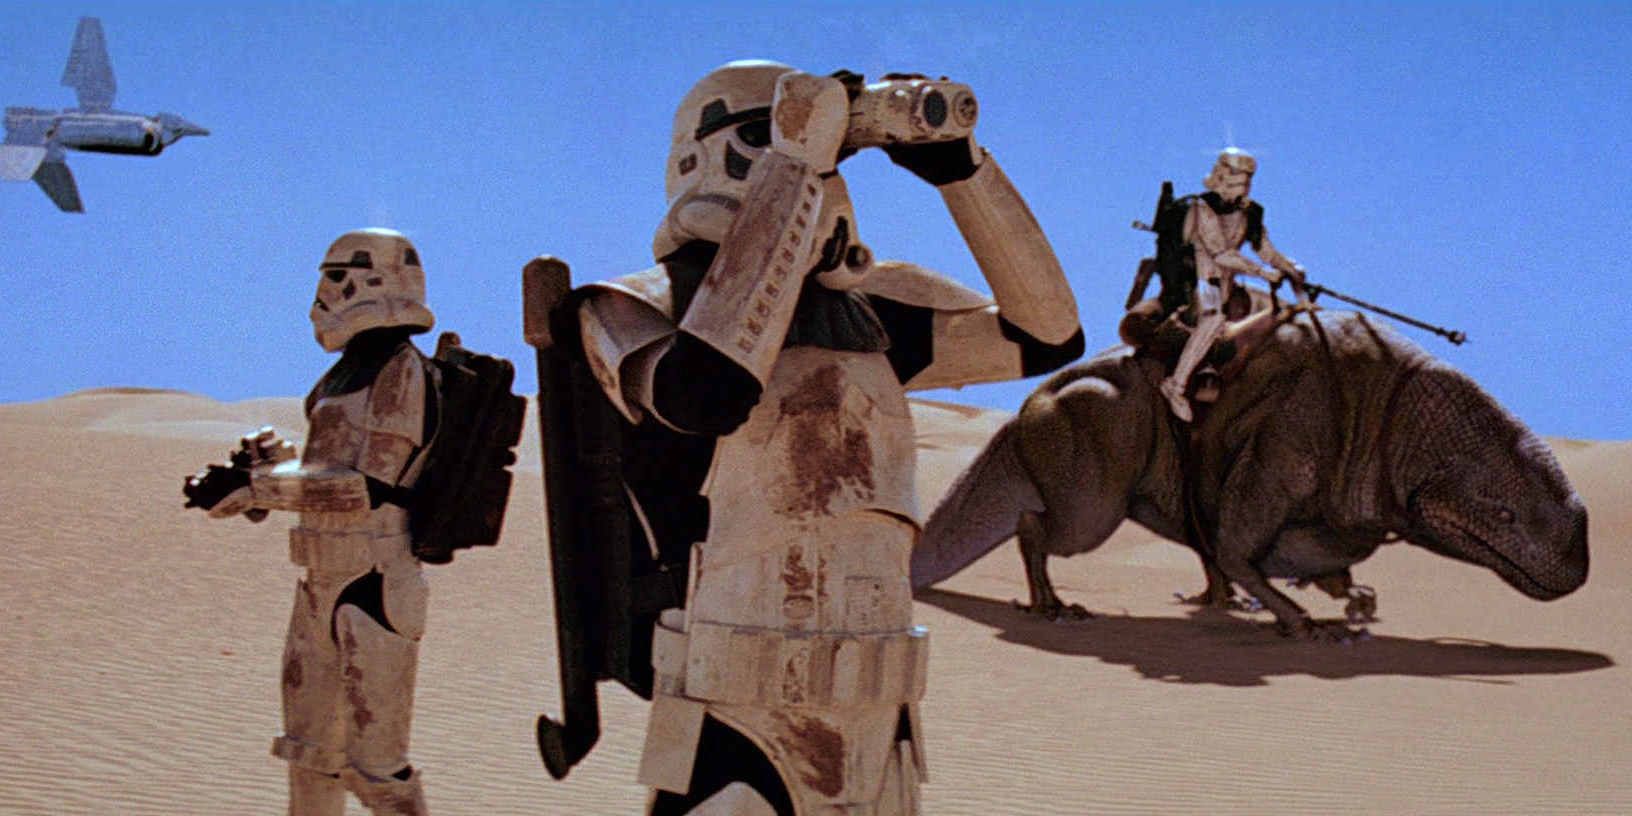 Stormtroopers on Tatooine in Star Wars